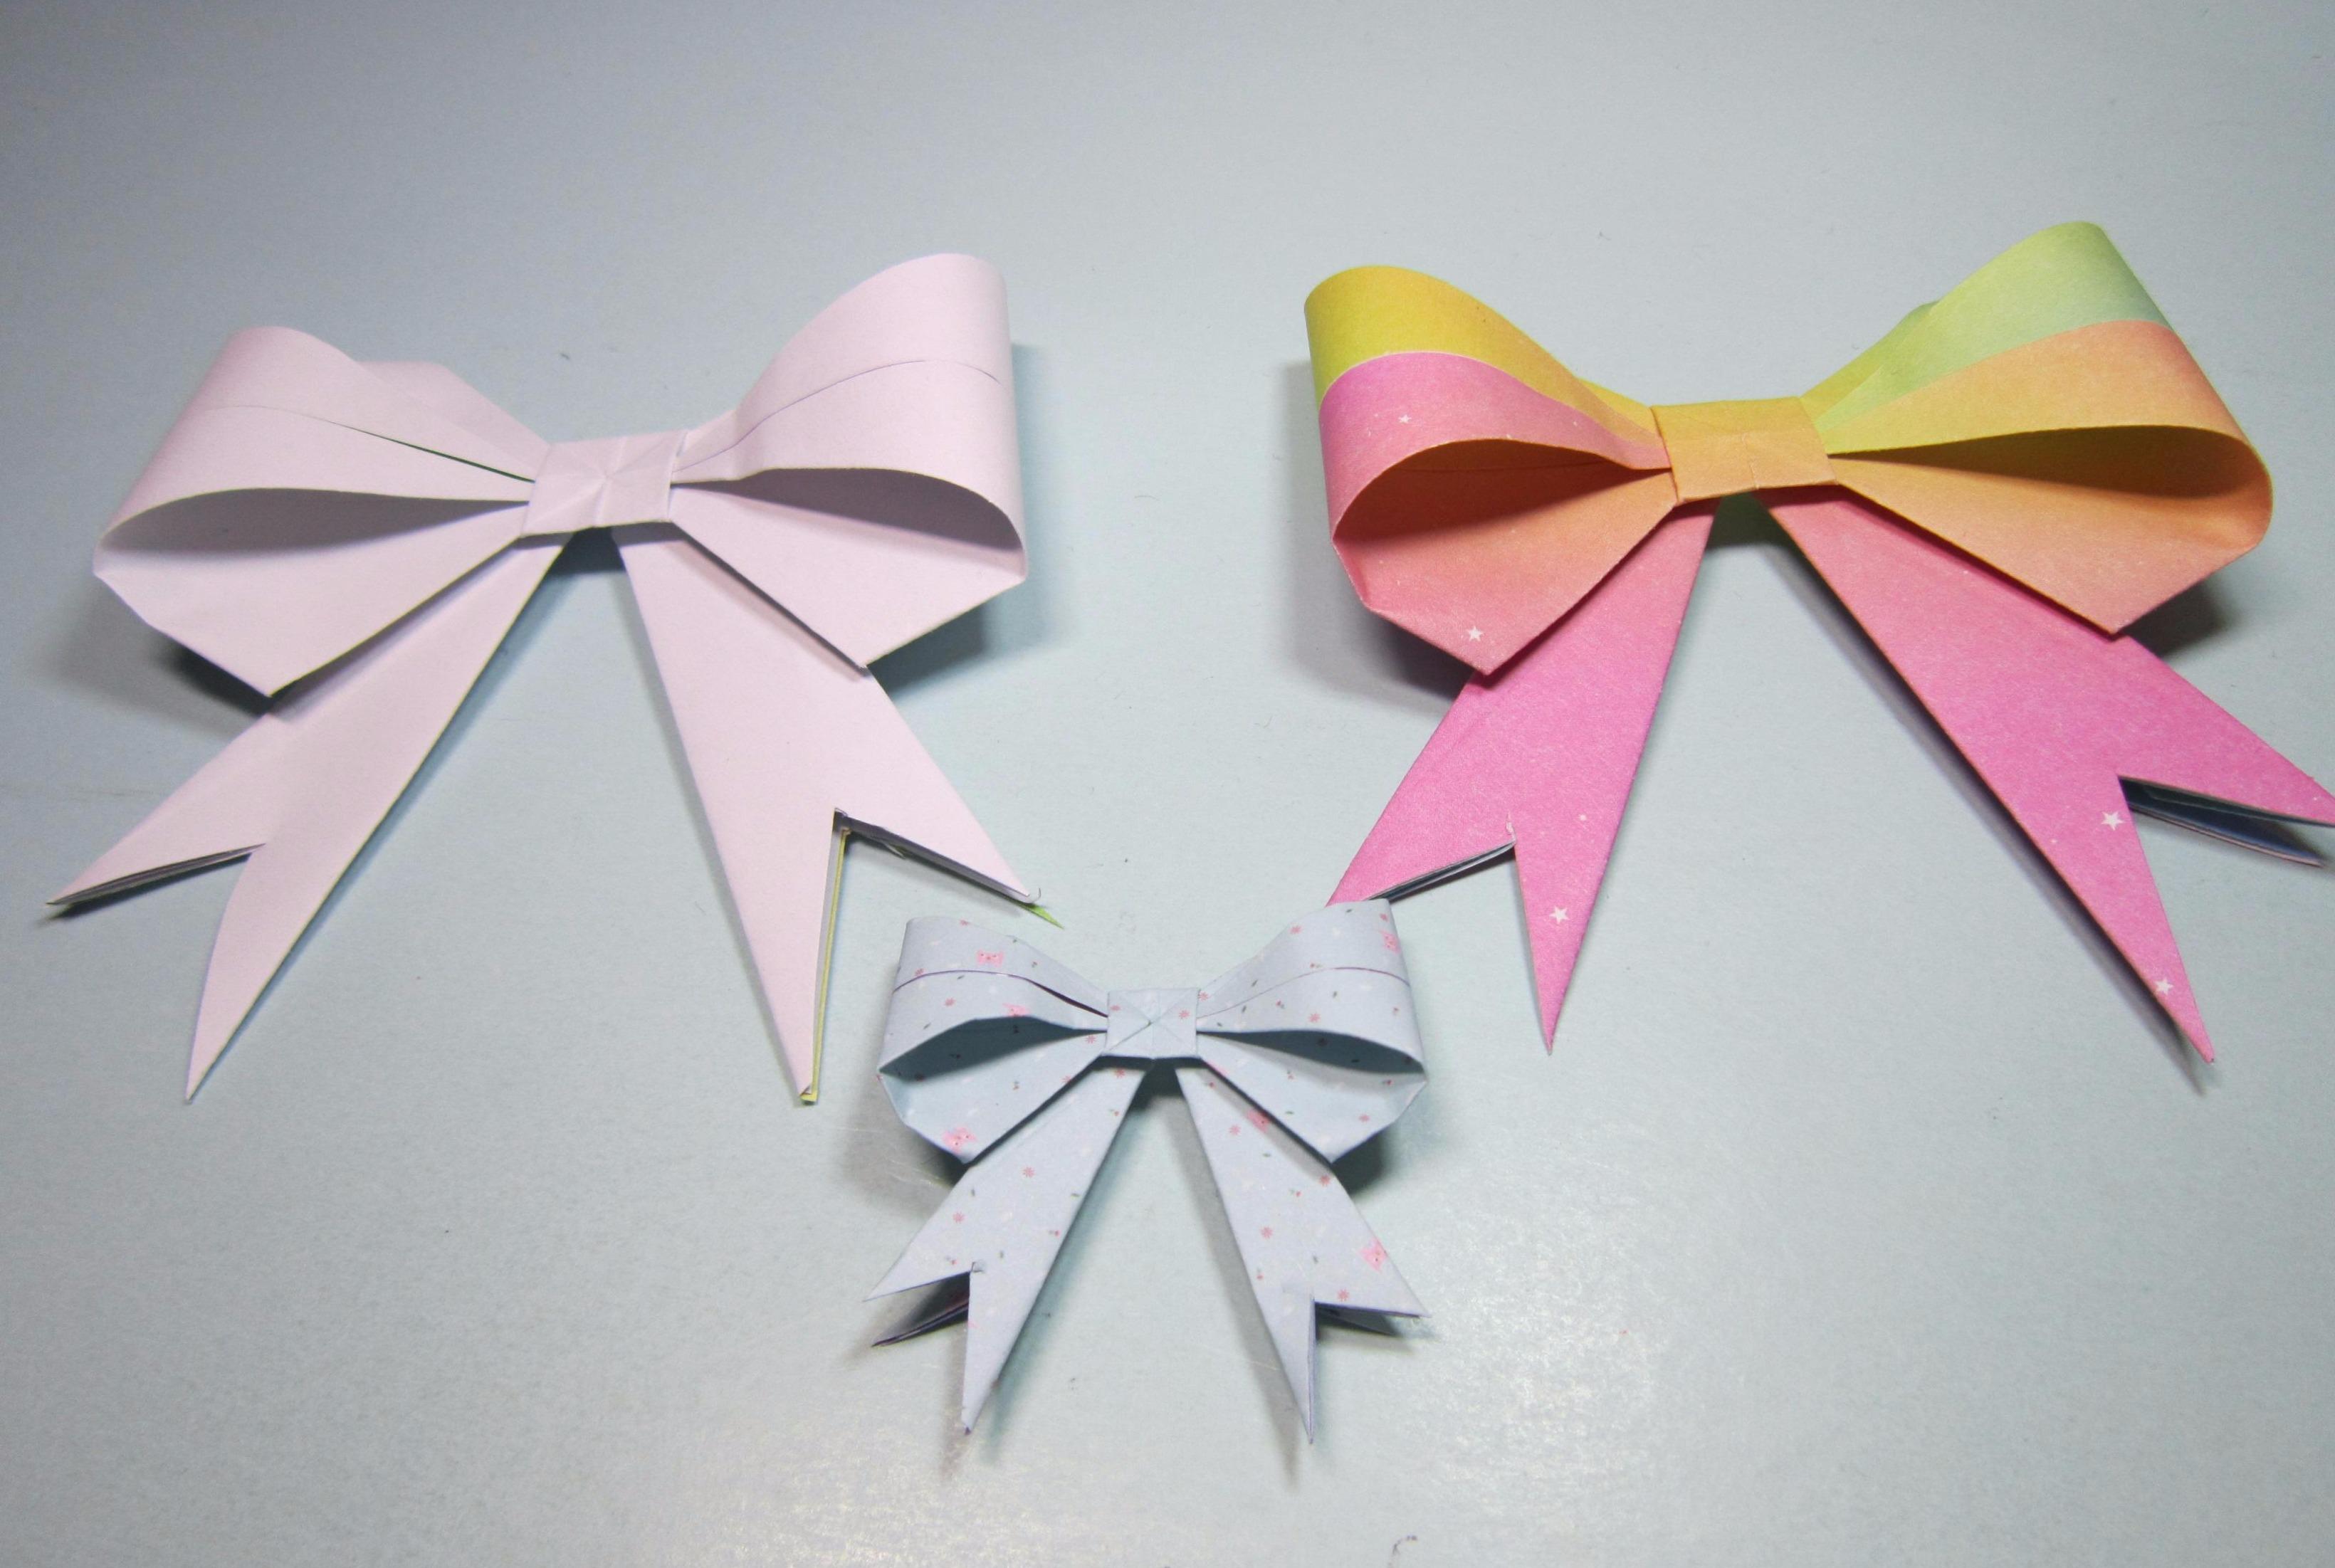 视频:儿童手工折纸蝴蝶结,一张纸4分钟折出美丽简单的蝴蝶结